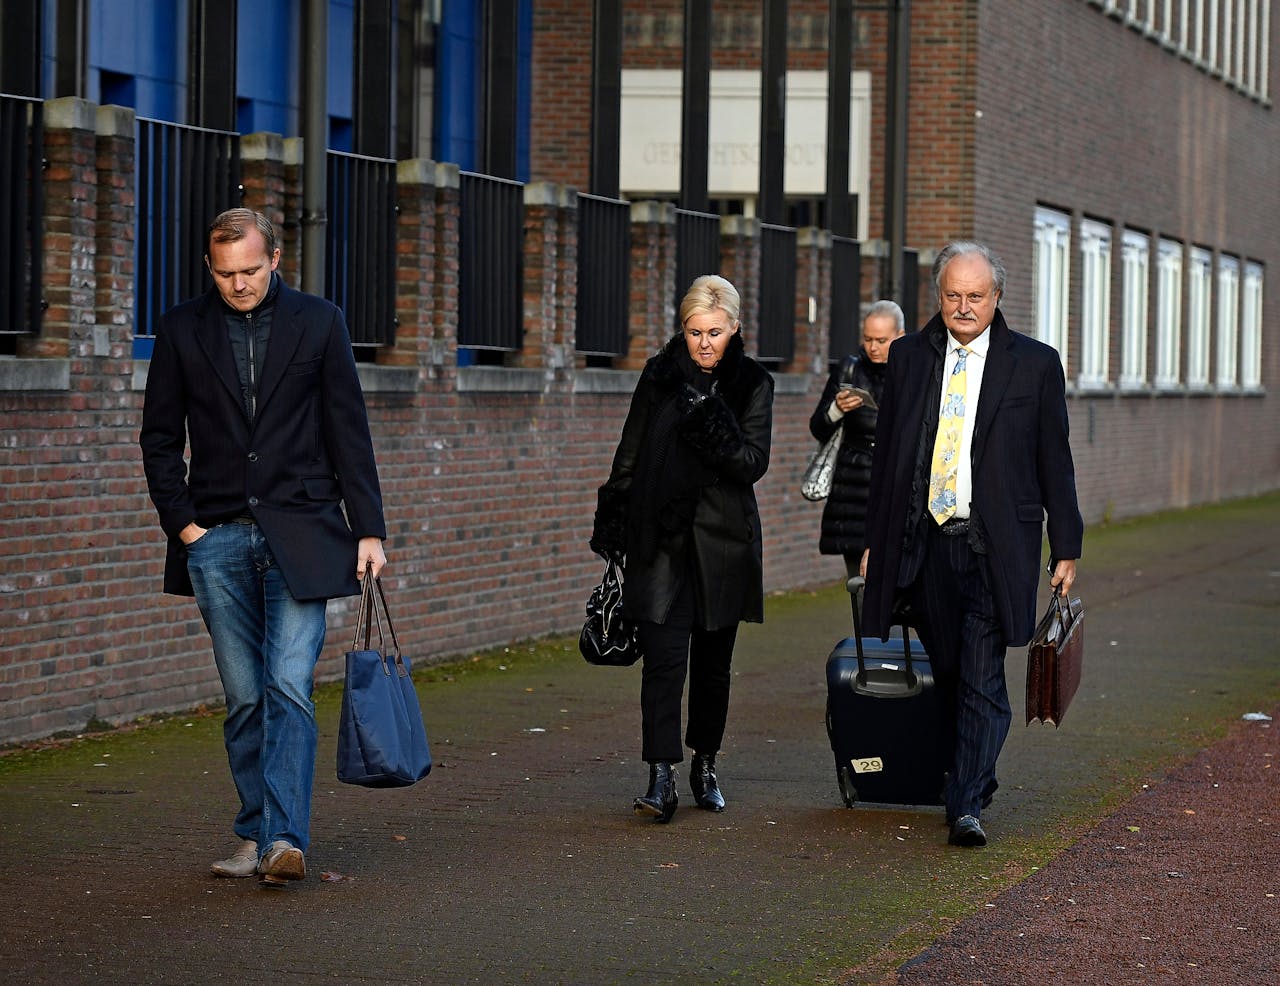 De vier verdachte leden van het gezin Visser arriveren woensdag bij de rechtbank in Almelo, met Ger Visser rechts en naast hem lopend Patricia Visser-Vroklage. (Foto: Eric Brinkhorst voor Het Financieele Dagblad)